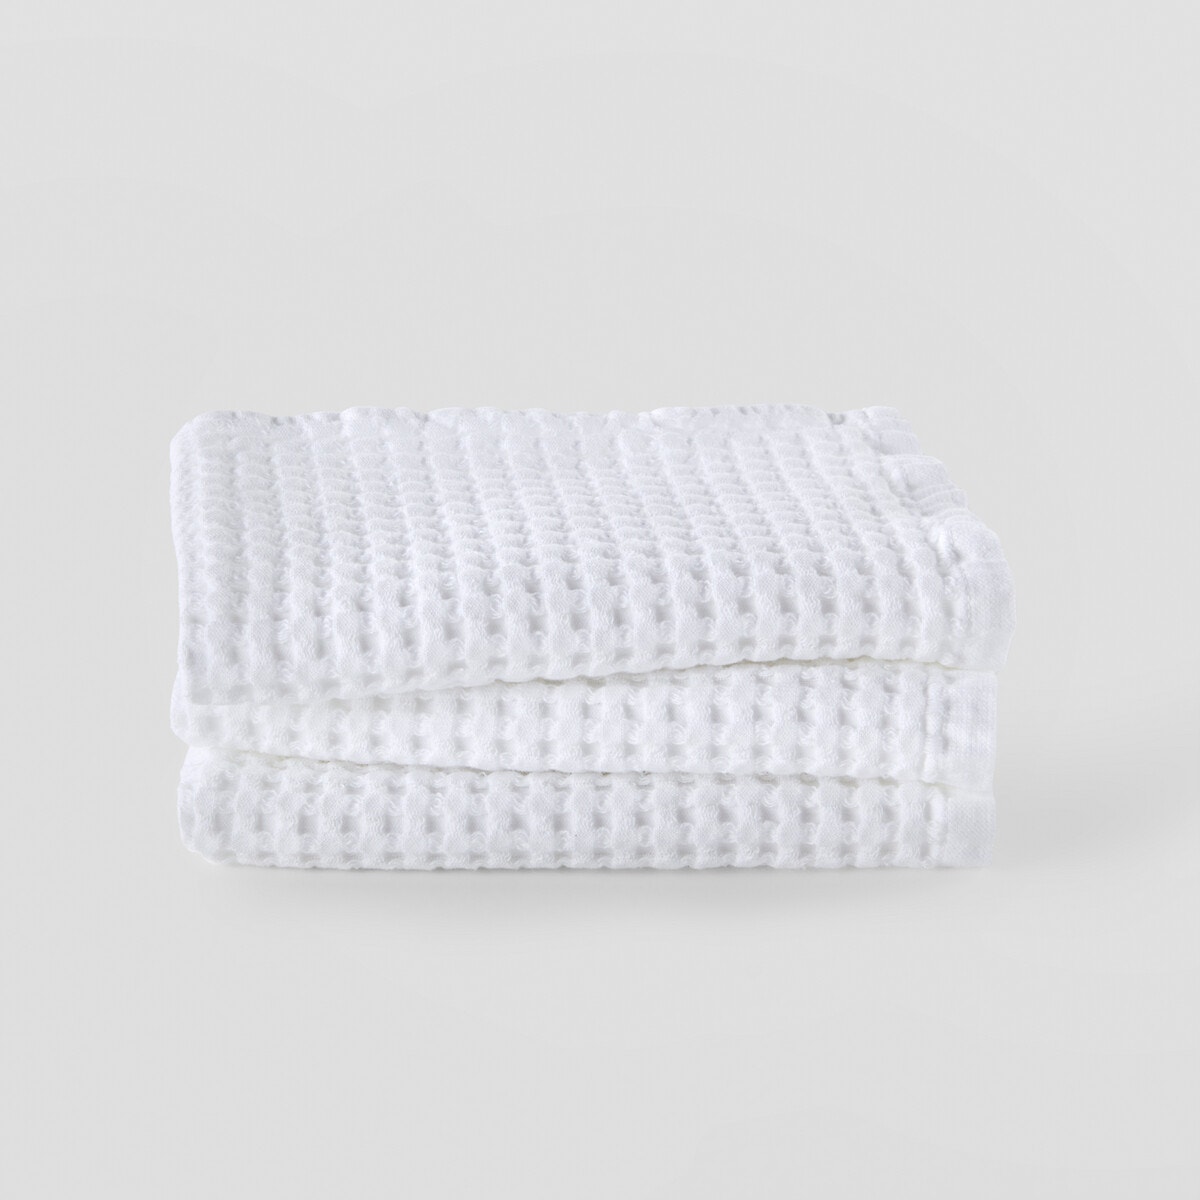 Σπίτι > Λευκά είδη > Μπάνιο > Πετσέτες χεριών Σετ 3 βαμβακερές πετσέτες χεριών 30x50 cm